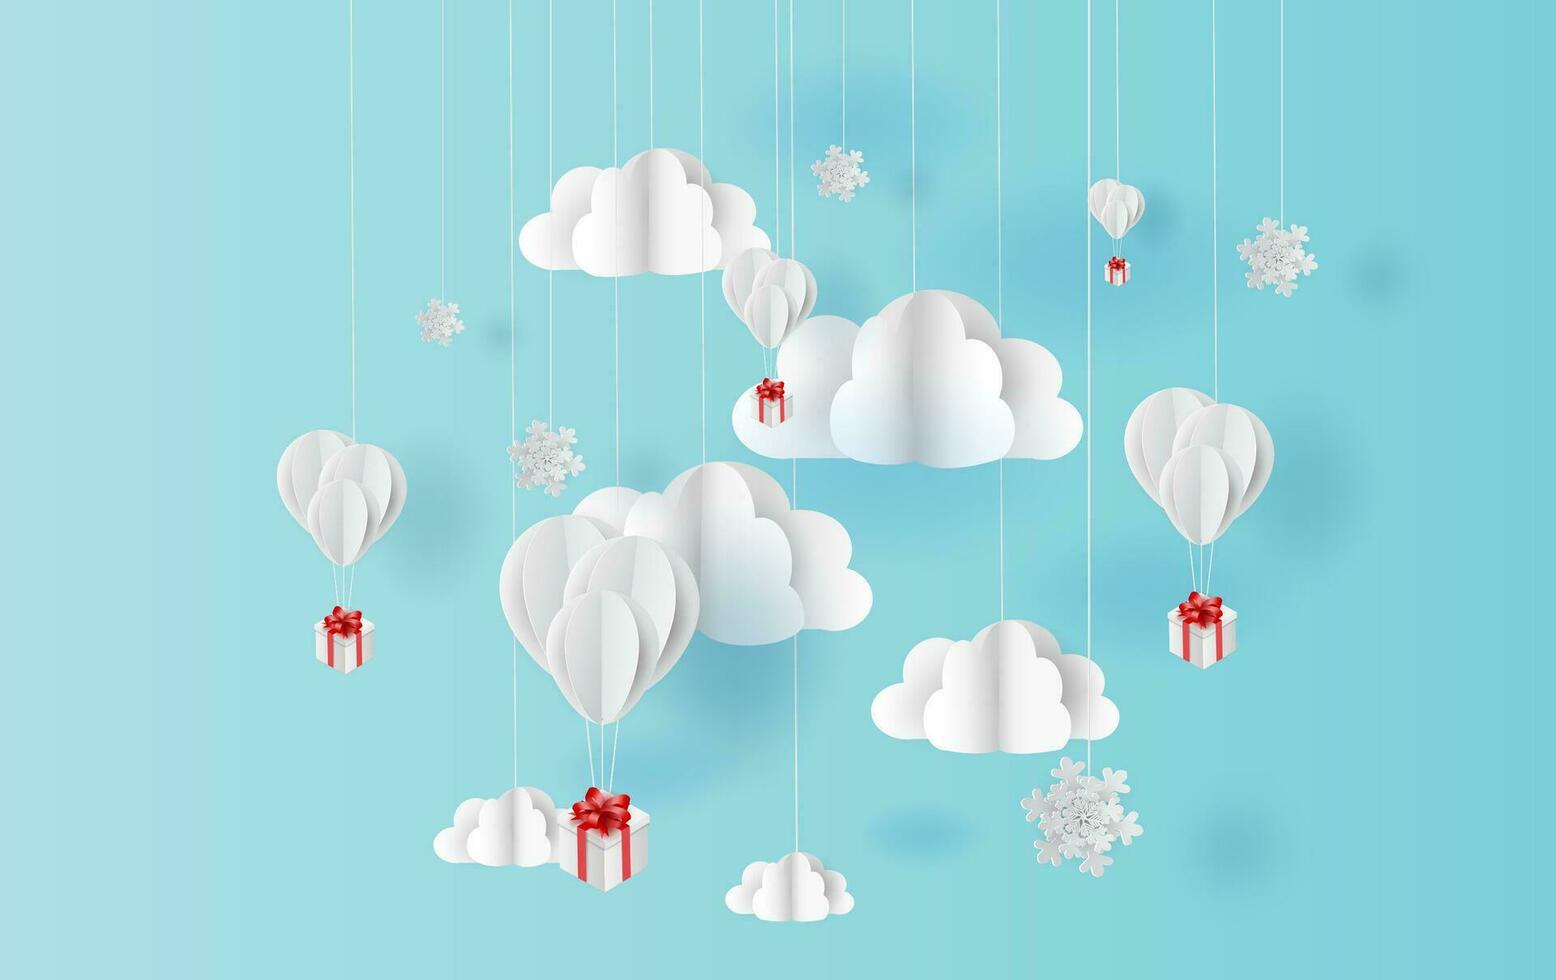 papper konst stil av ballonger färgrik Färg flytande i luft blå himmel bakgrund.kreativ design Plats för jul dag, festival, semester, sommar säsong, vår.idé snö pastell färg.vektor eps10 vektor